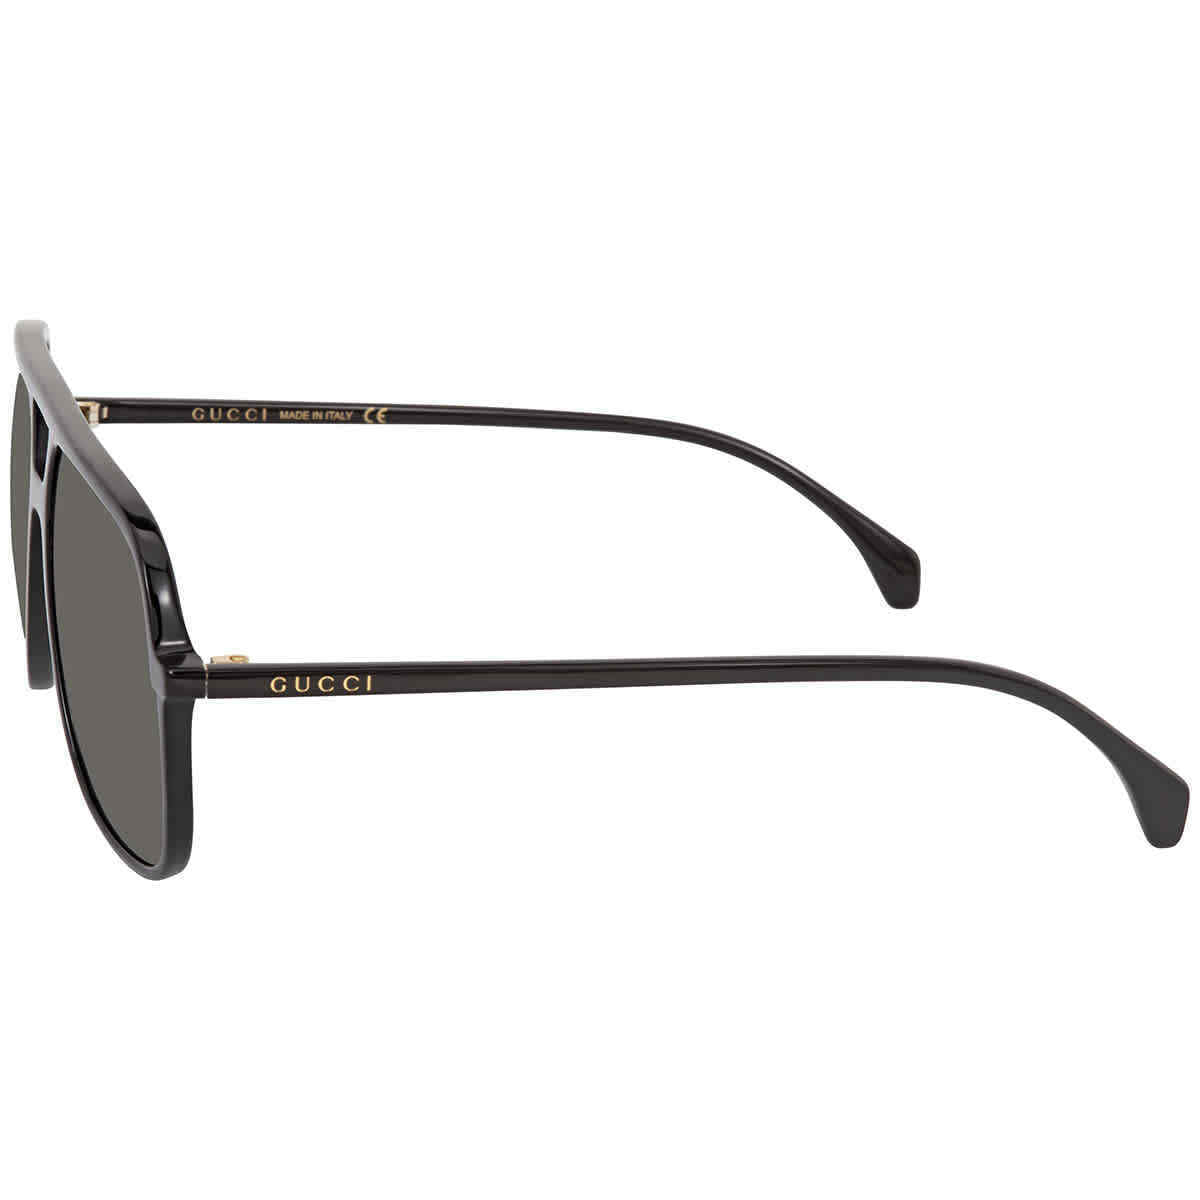 Gucci GG0545S-001 58mm New Sunglasses